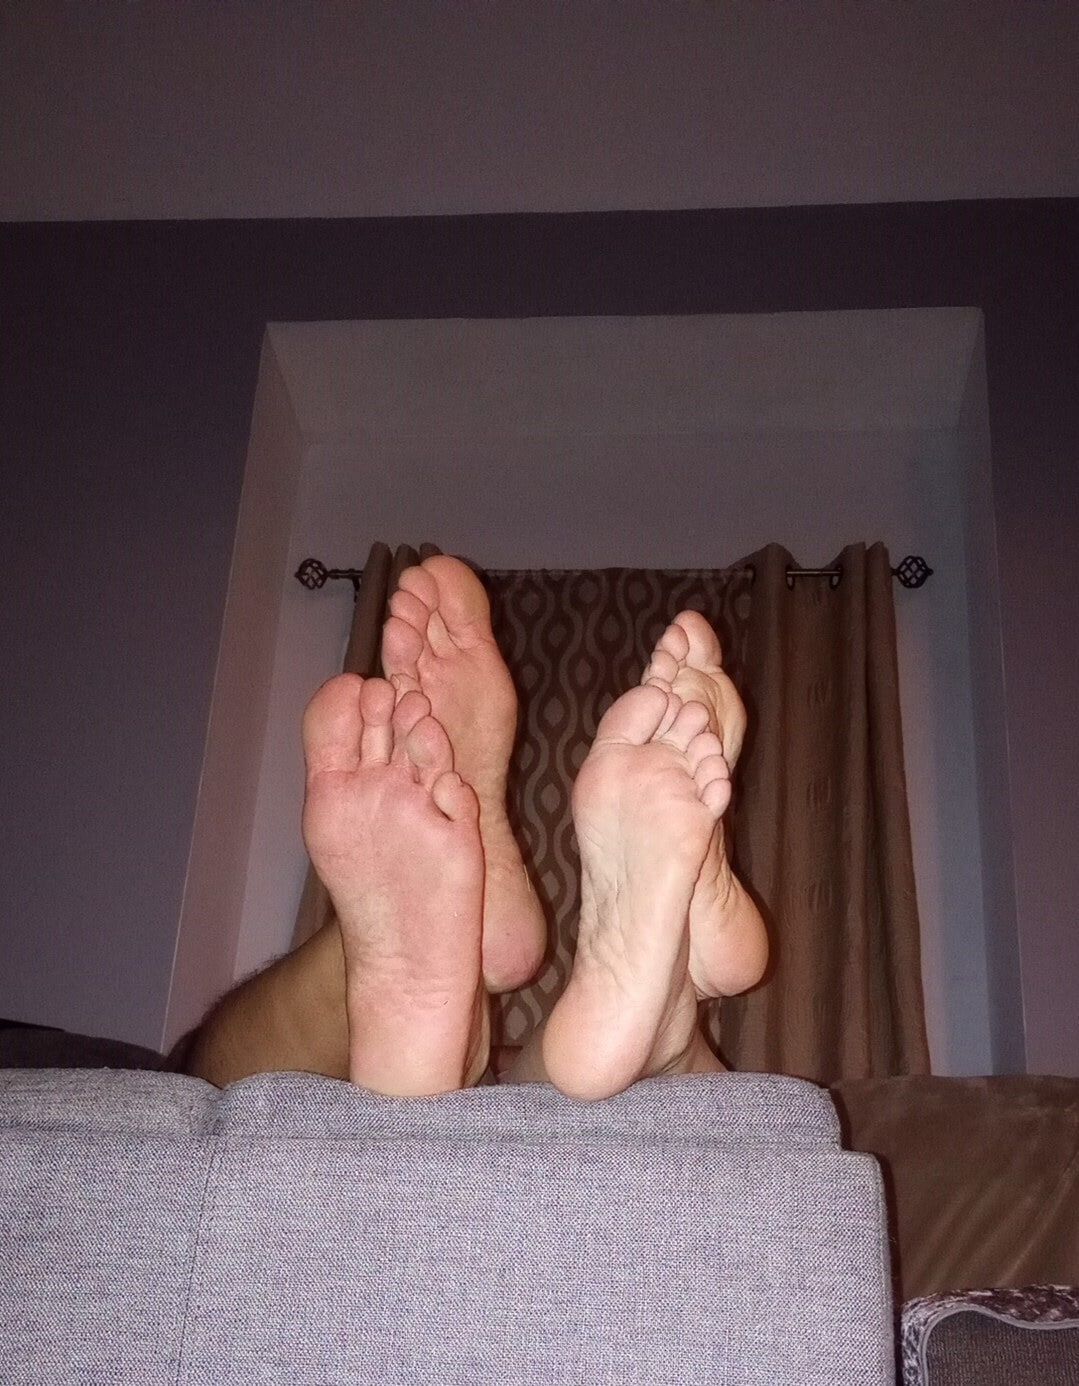 Do you like our feet together #8